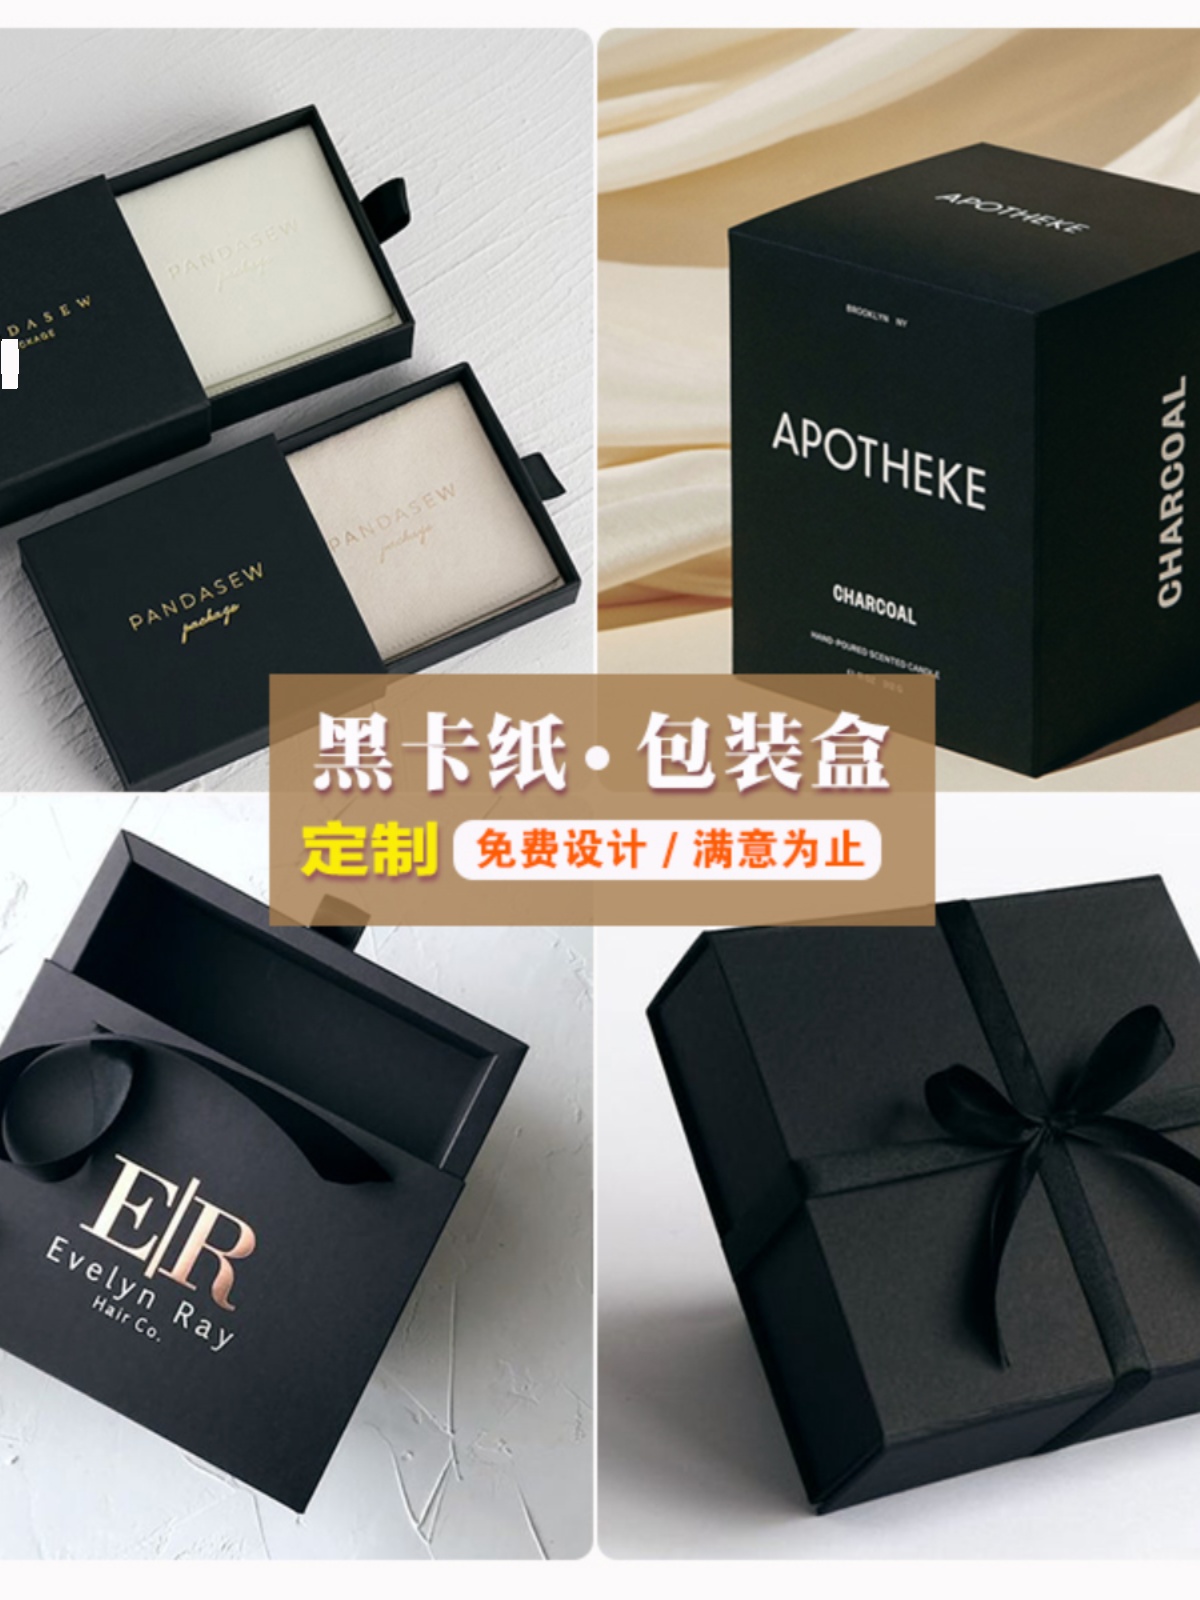 产品包装盒订制黑卡纸盒设计化妆品盒子定做小批量彩盒印刷logo